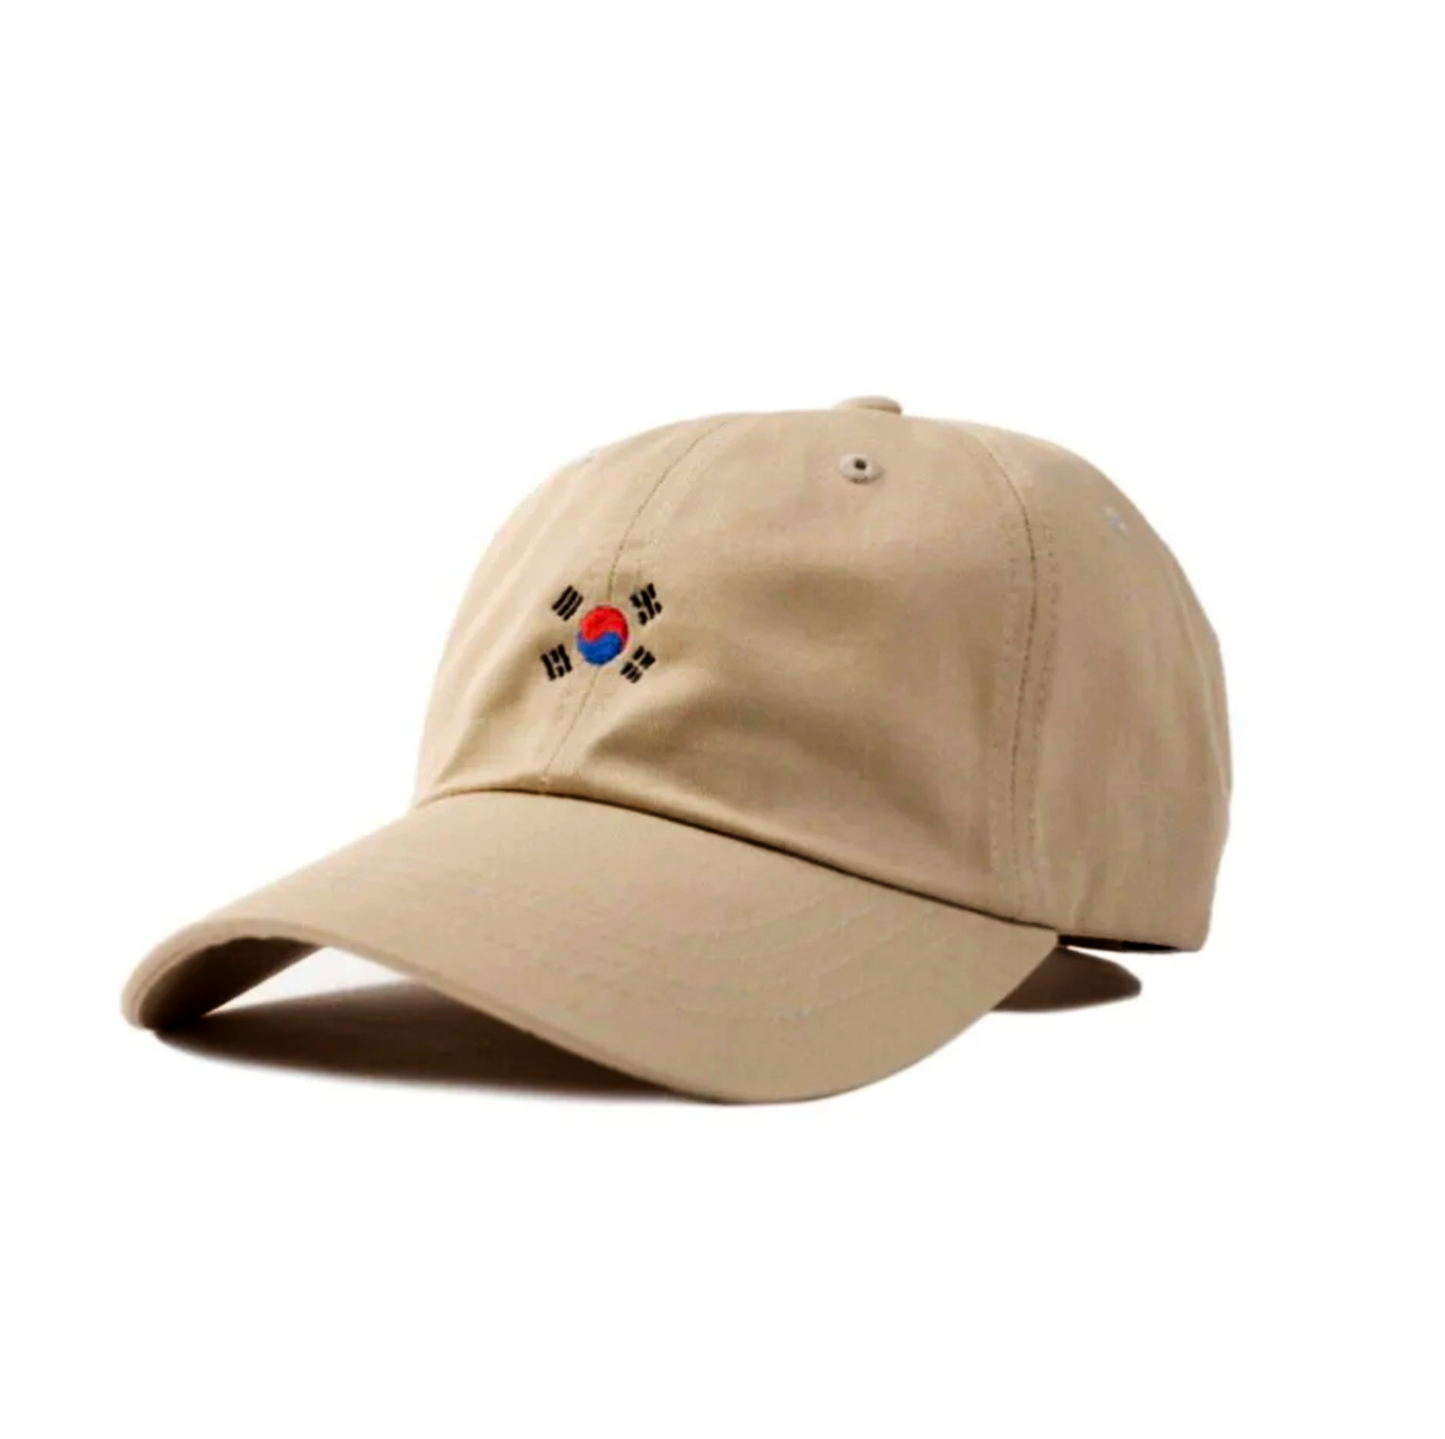 The Korea Hat